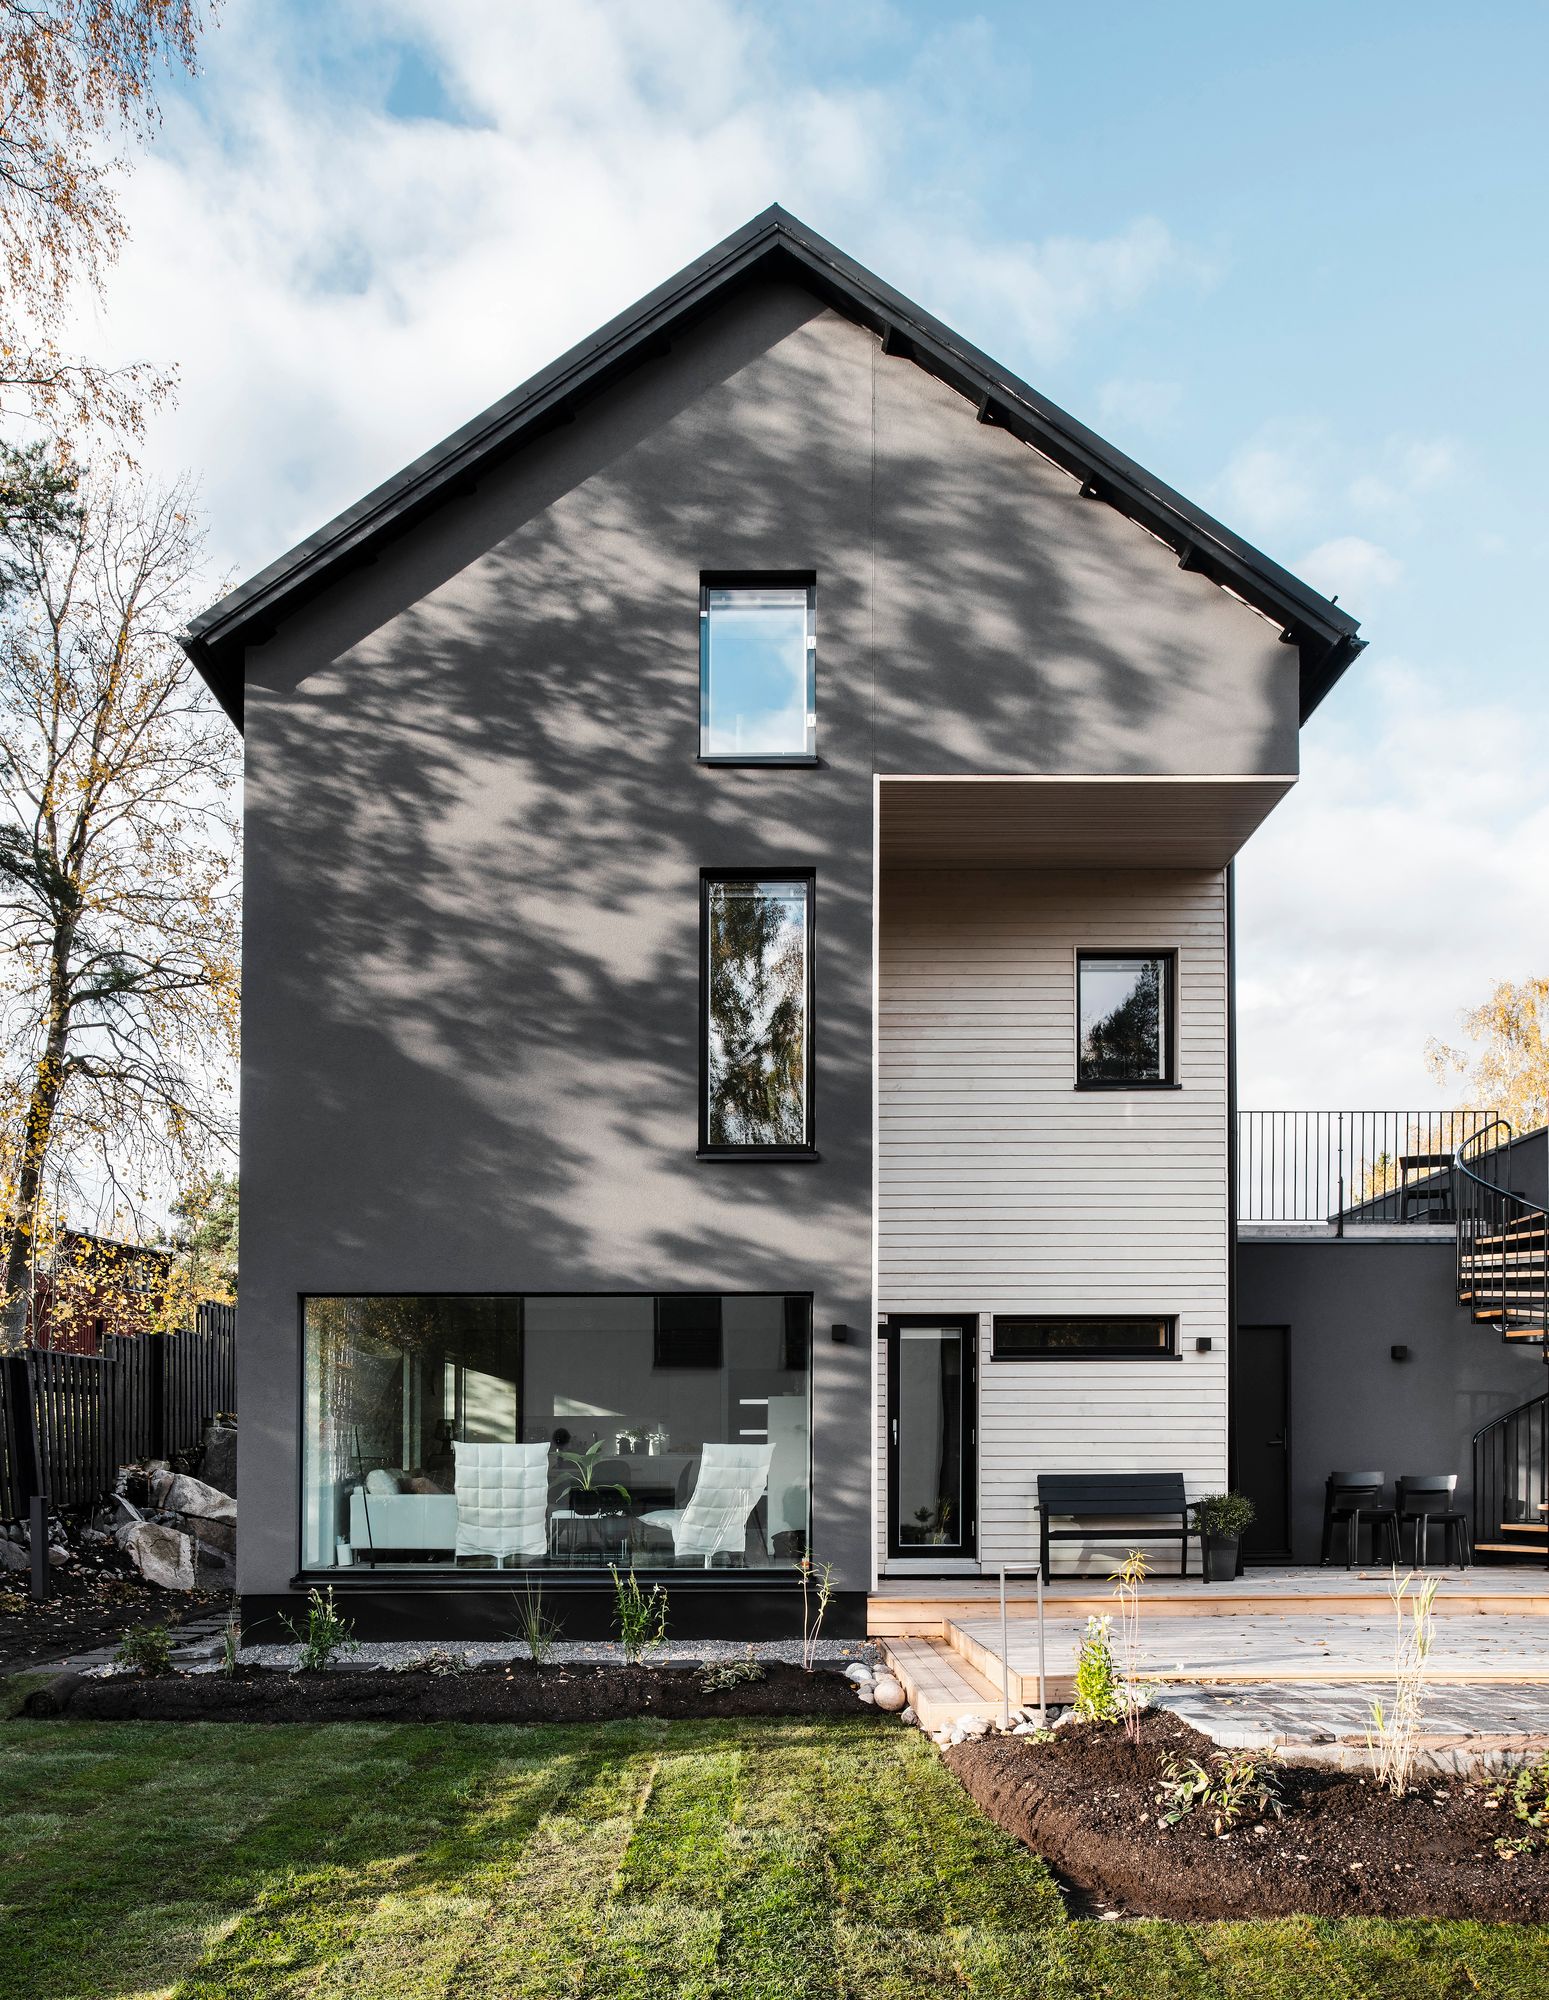 Talon korkeus ja Tuomas Siitosen suunnittelema arkkitehtuuri näkyy komeasti pihan puolella. Pihasuunnitelman teki Vekkeli & Lemmenlehti Oy.